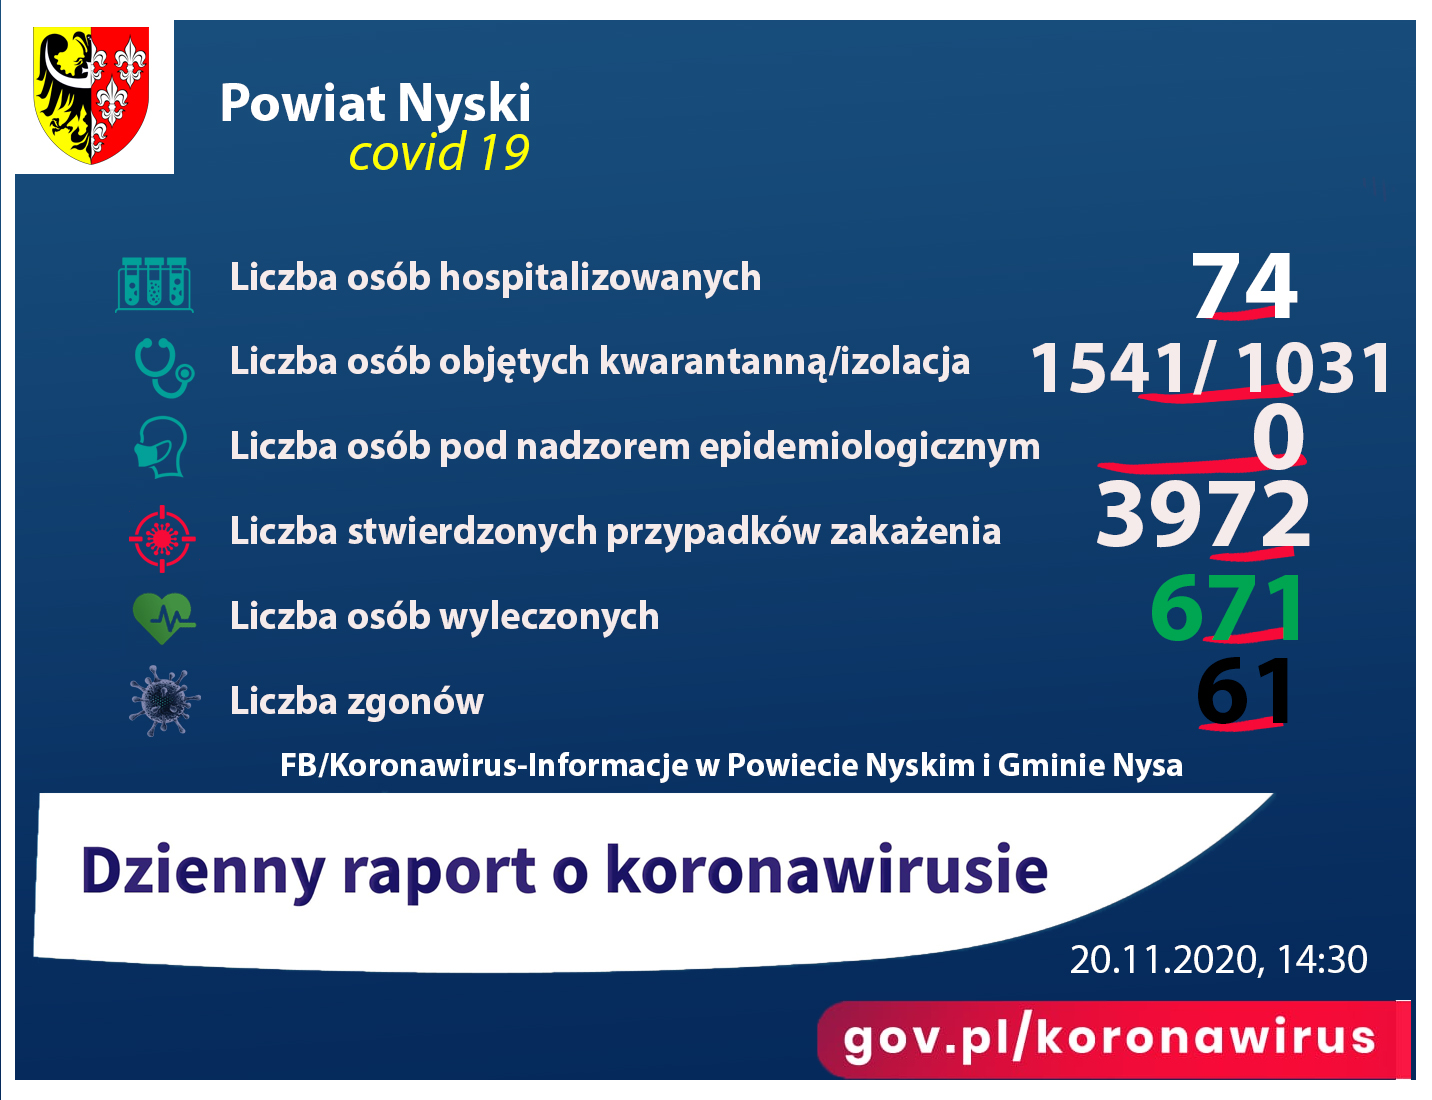 Liczba osób zakażonych 3972, hospitalizowanych - 74, ozdrowieńców - 671, zgonów 61